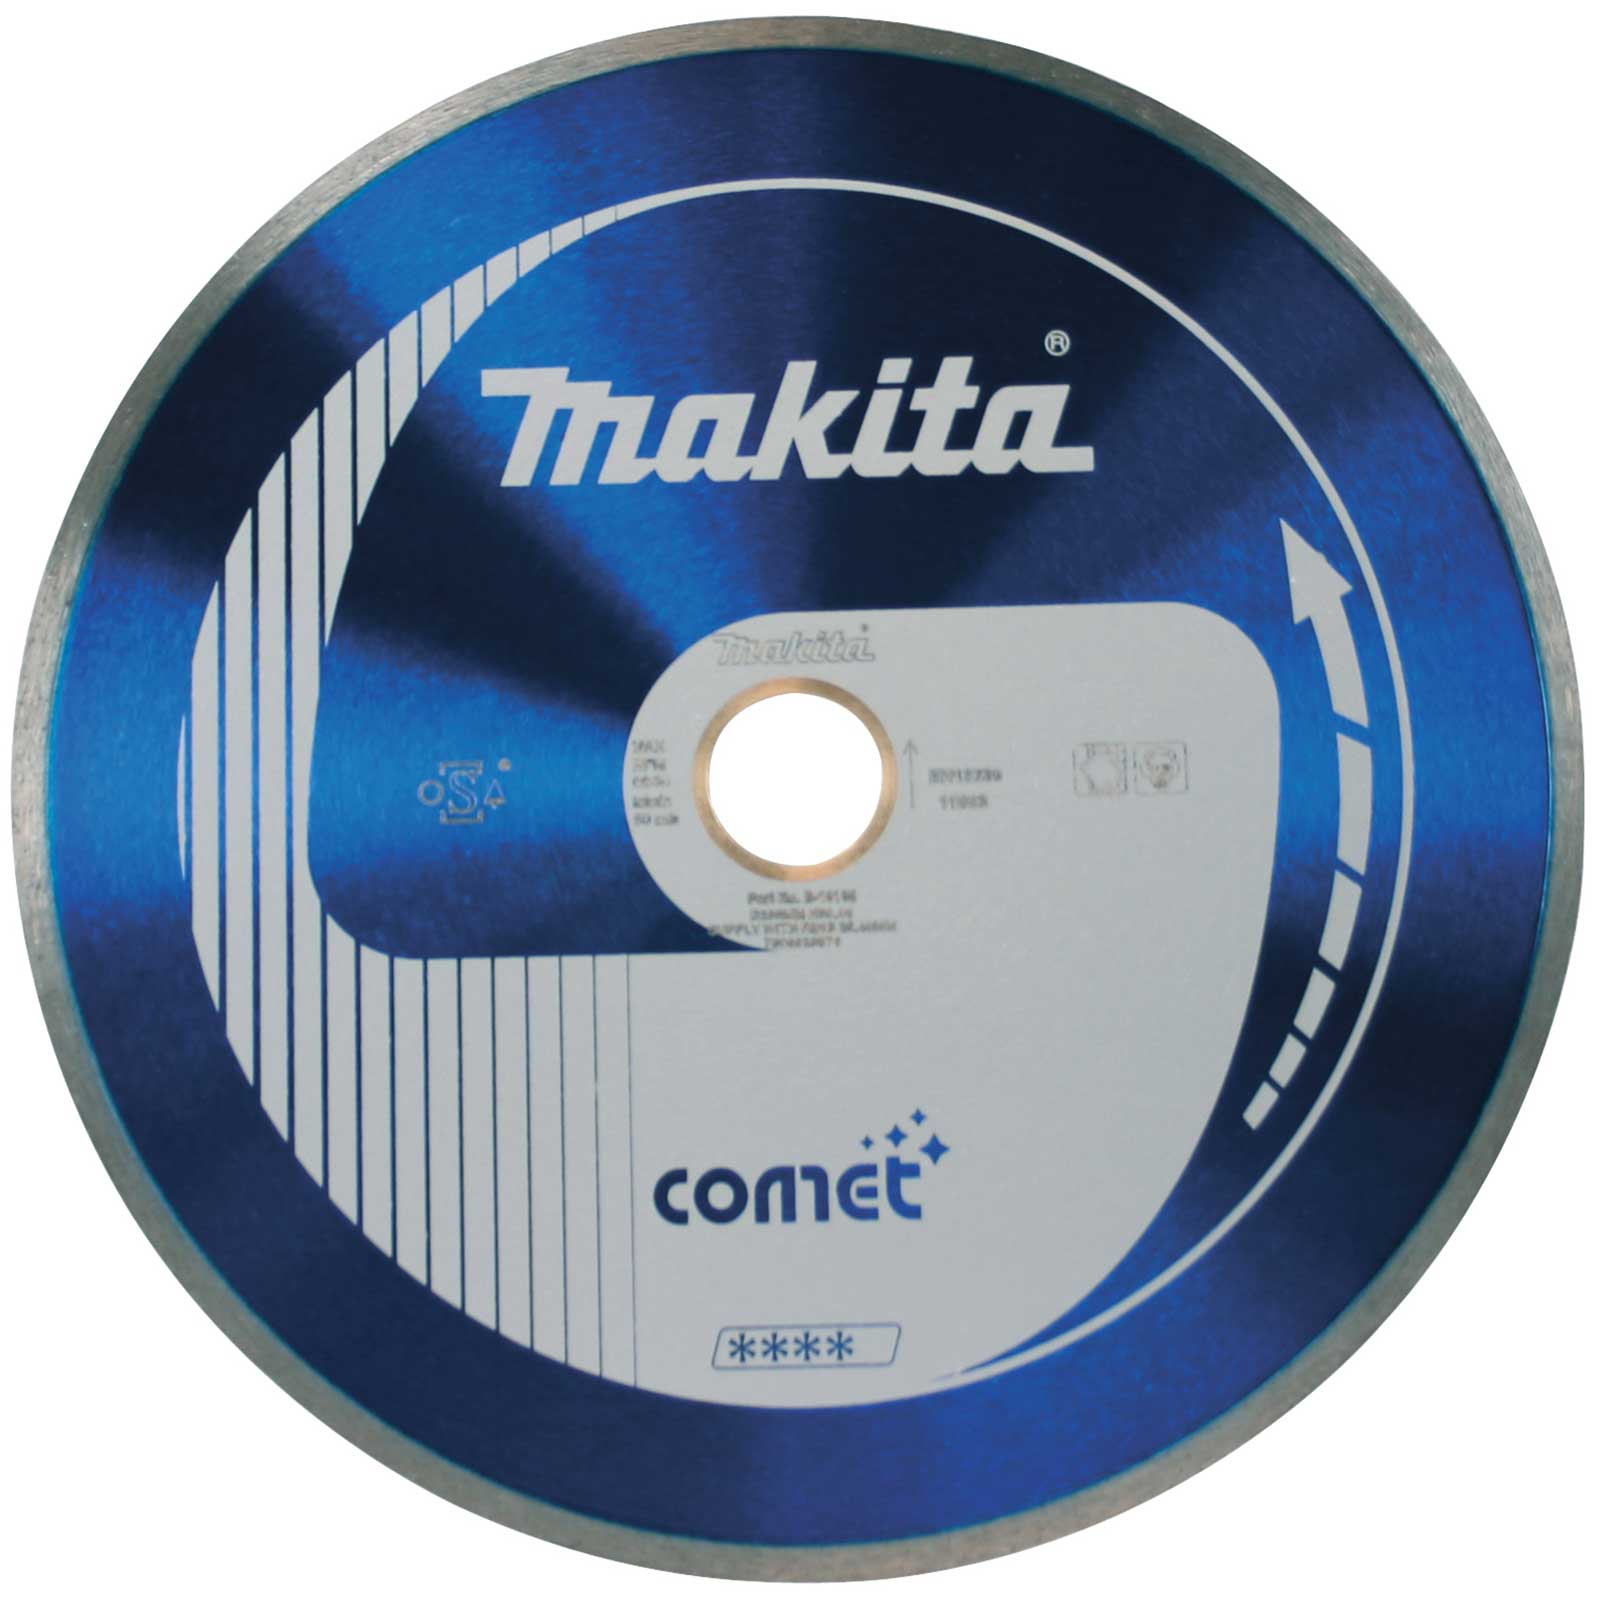 Photo of Makita Comet Continuous Rim Diamond Cutting Disc 115mm